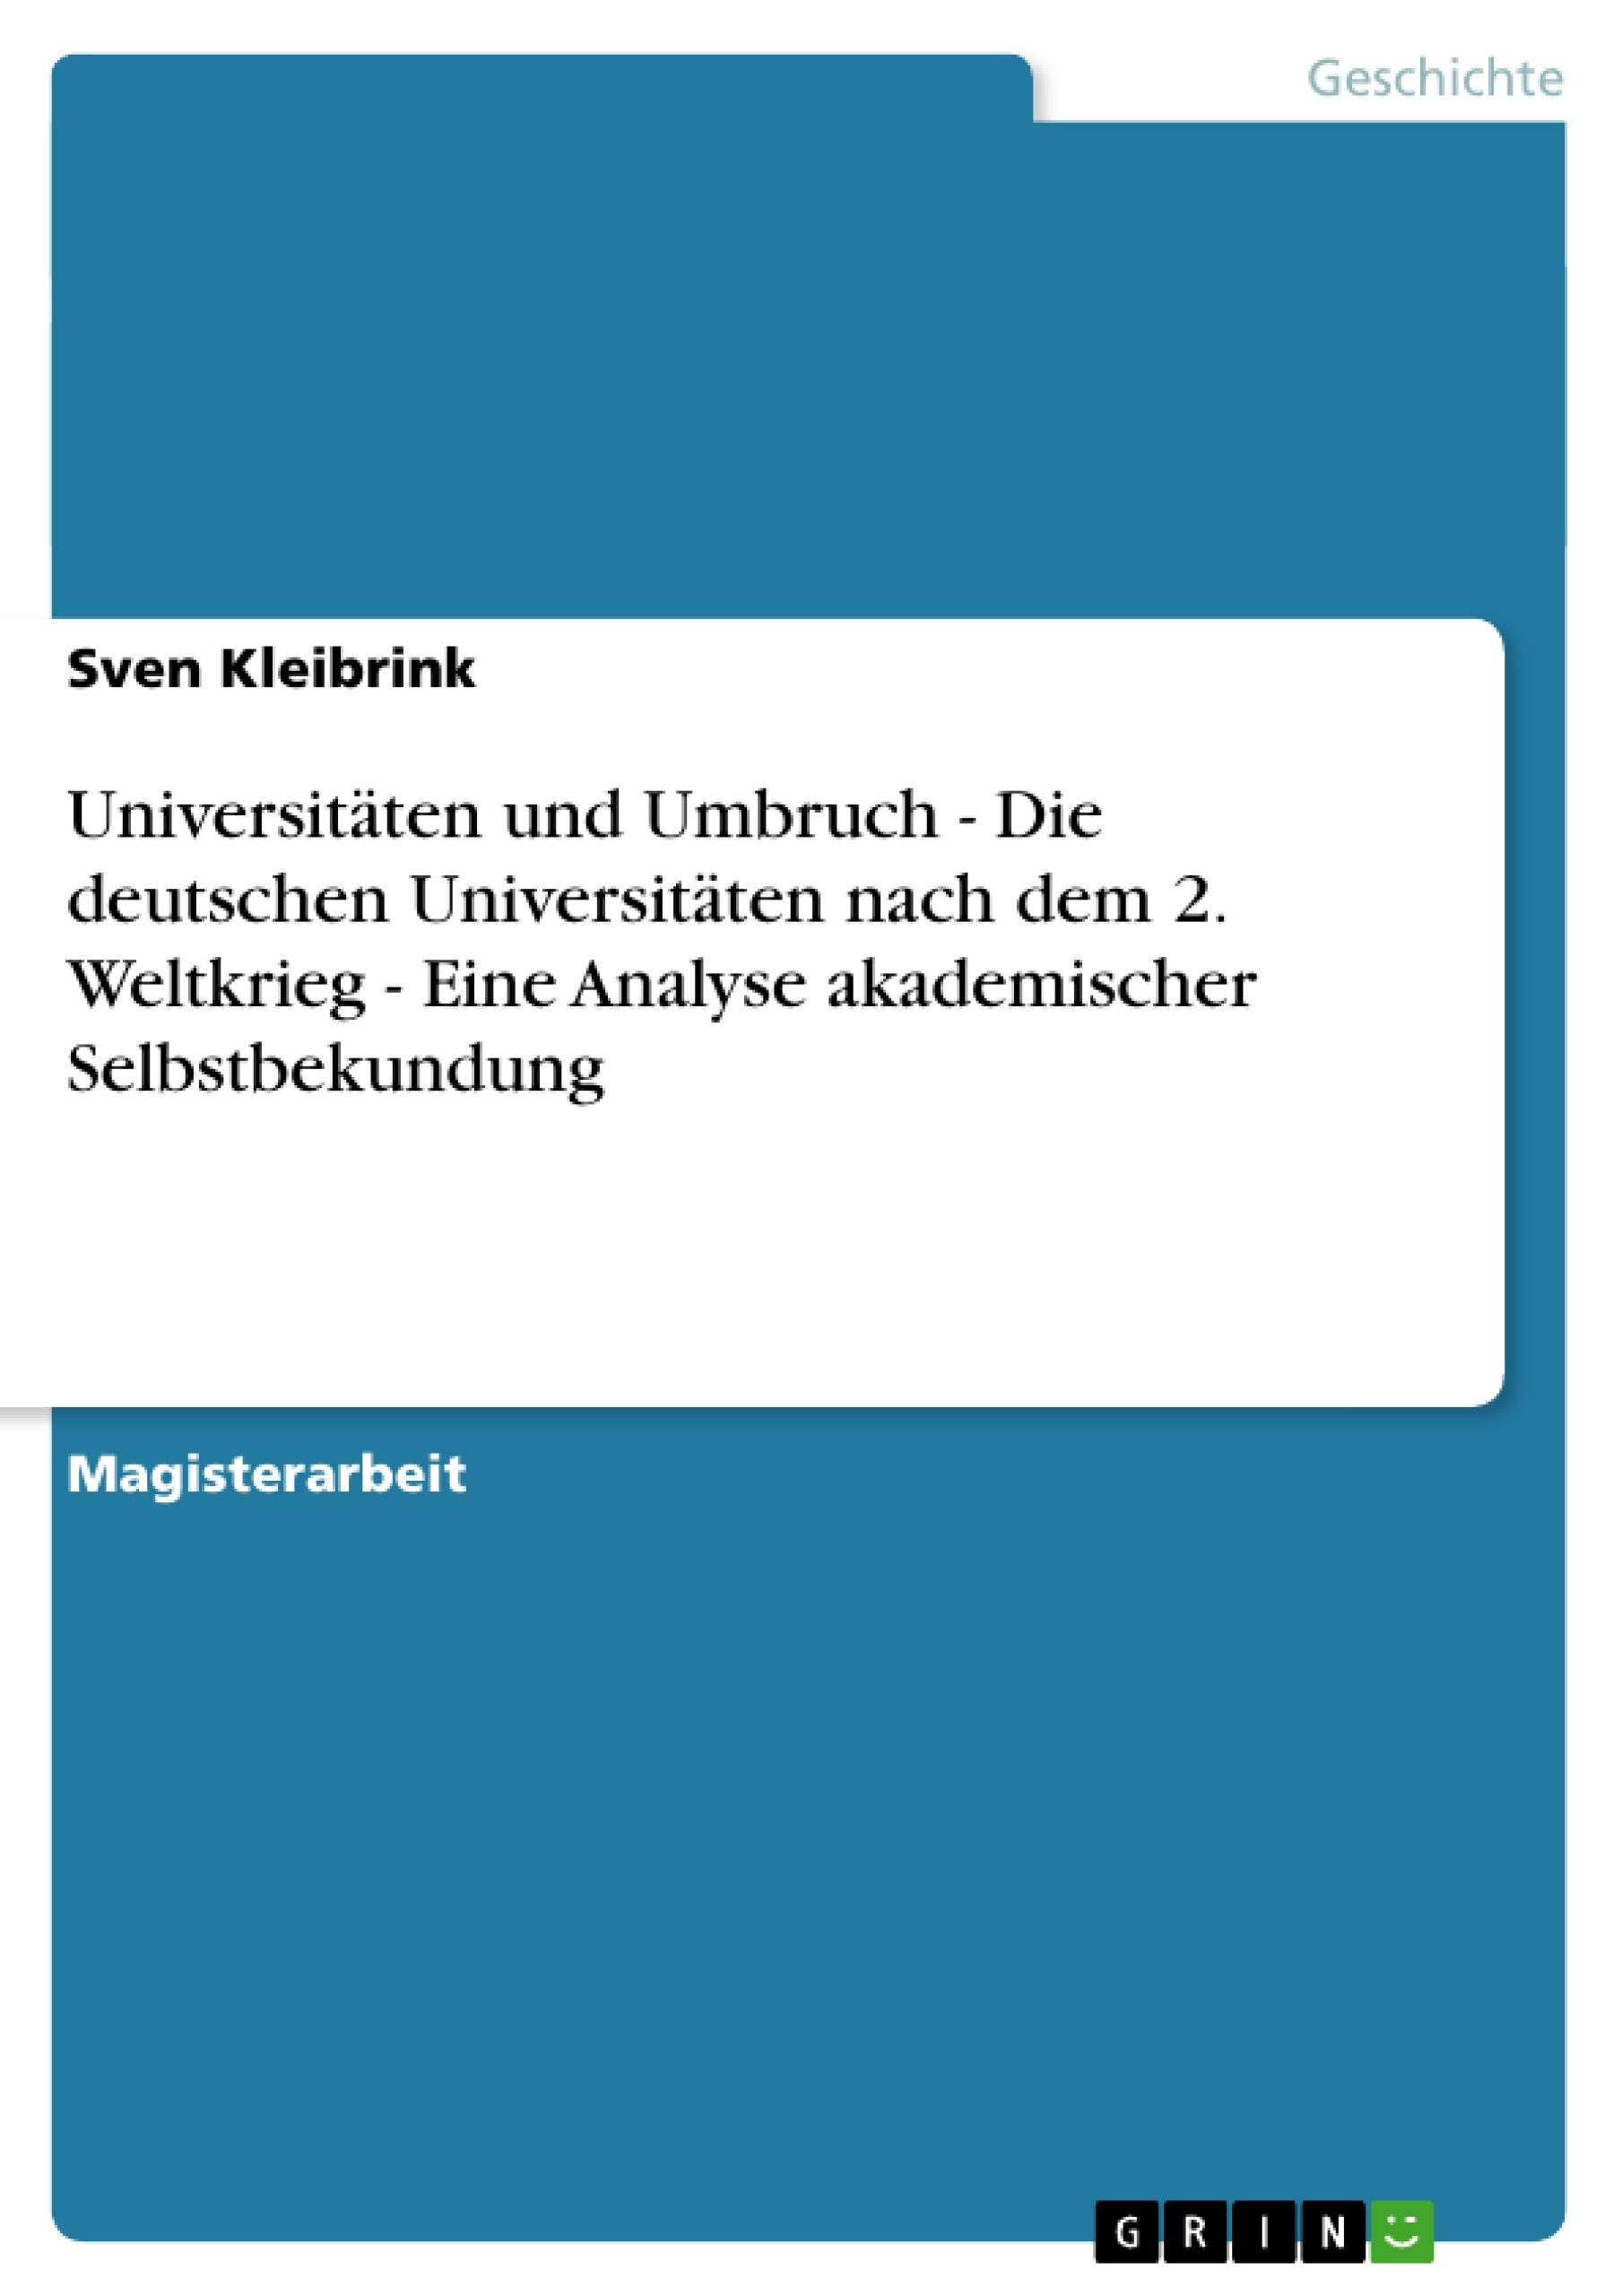 Title: Universitäten und Umbruch - Die deutschen Universitäten nach dem 2. Weltkrieg - Eine Analyse akademischer Selbstbekundung